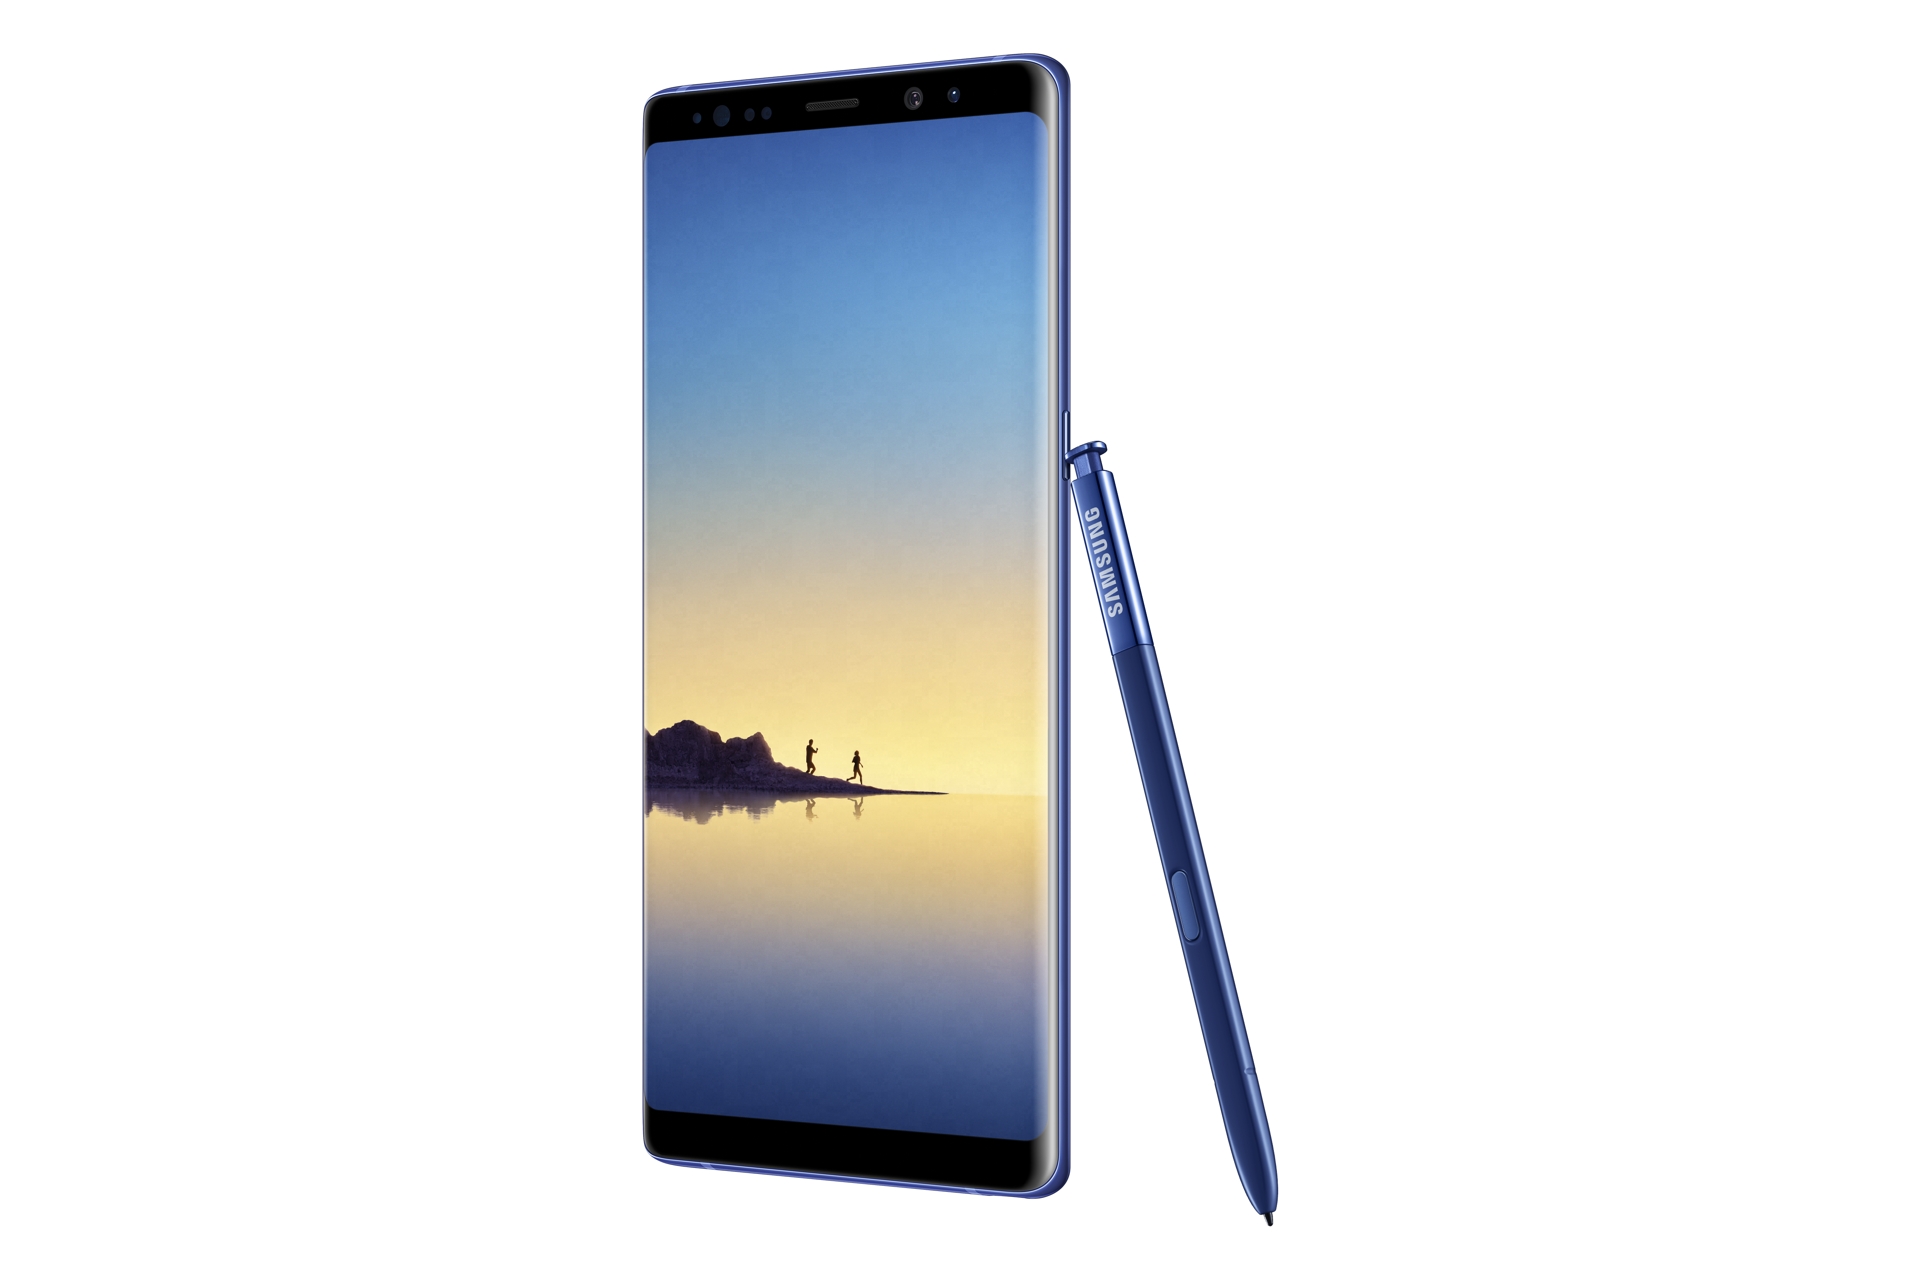 Immagine pubblicata in relazione al seguente contenuto: Samsung annuncia il lancio imminente del Galaxy Note8 di colore blue mare | Nome immagine: news27342_Samsung-Galaxy-Note8-Deepsea-Blue_1.jpg